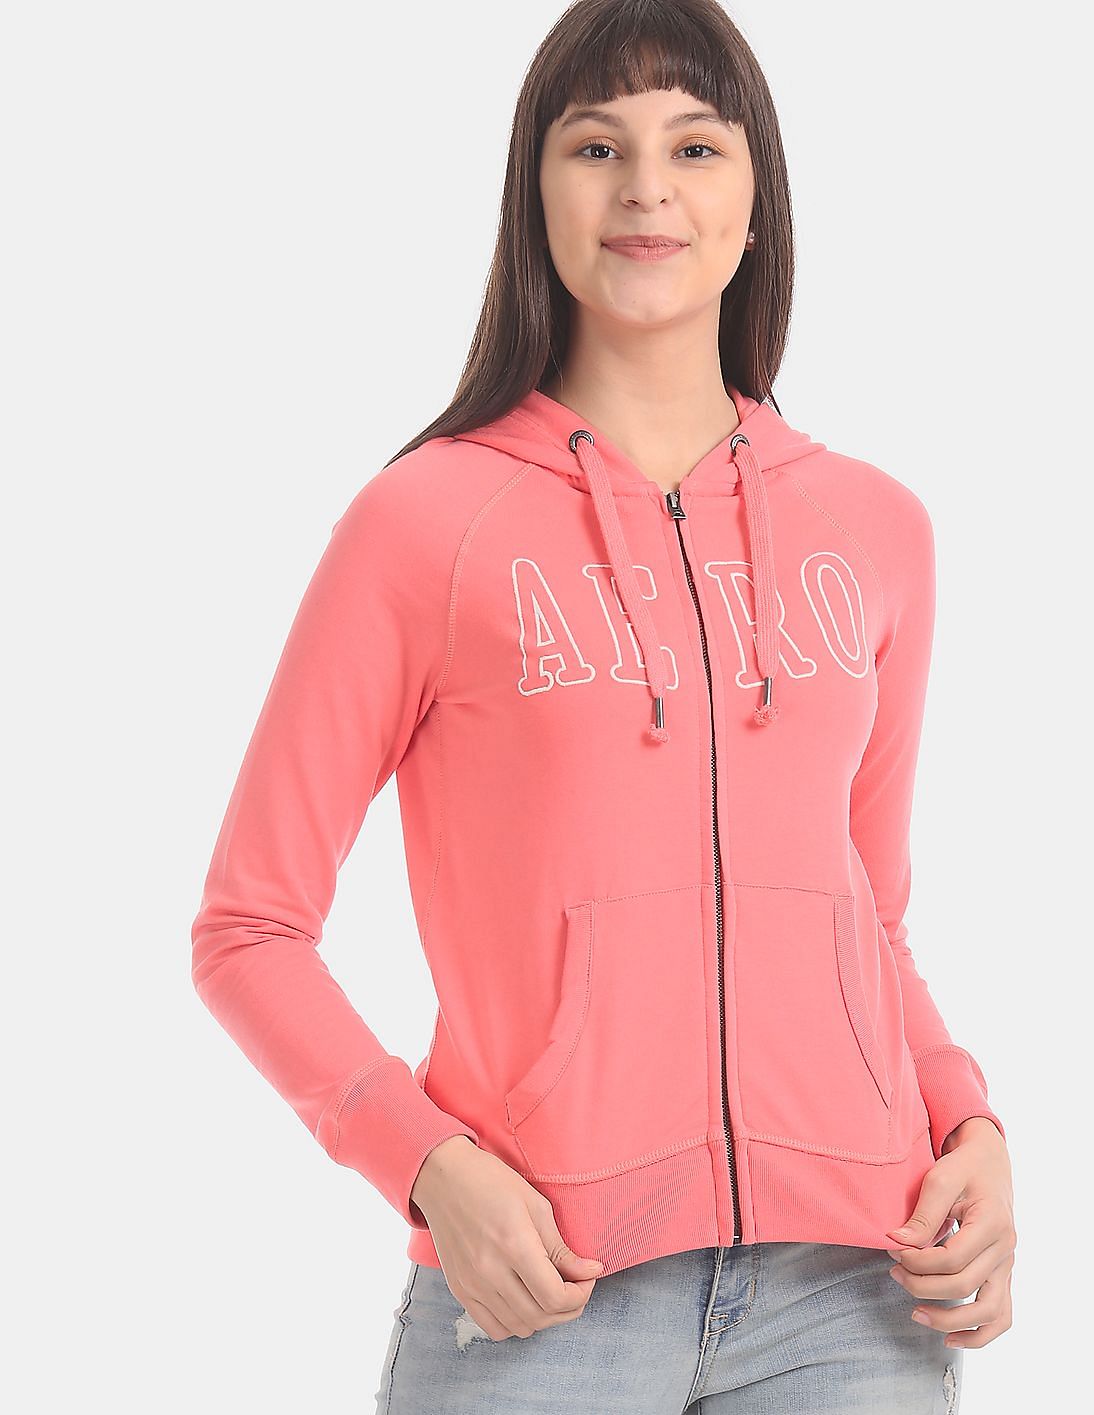 Buy Aeropostale Pink Hooded Fleece Sweatshirt - NNNOW.com